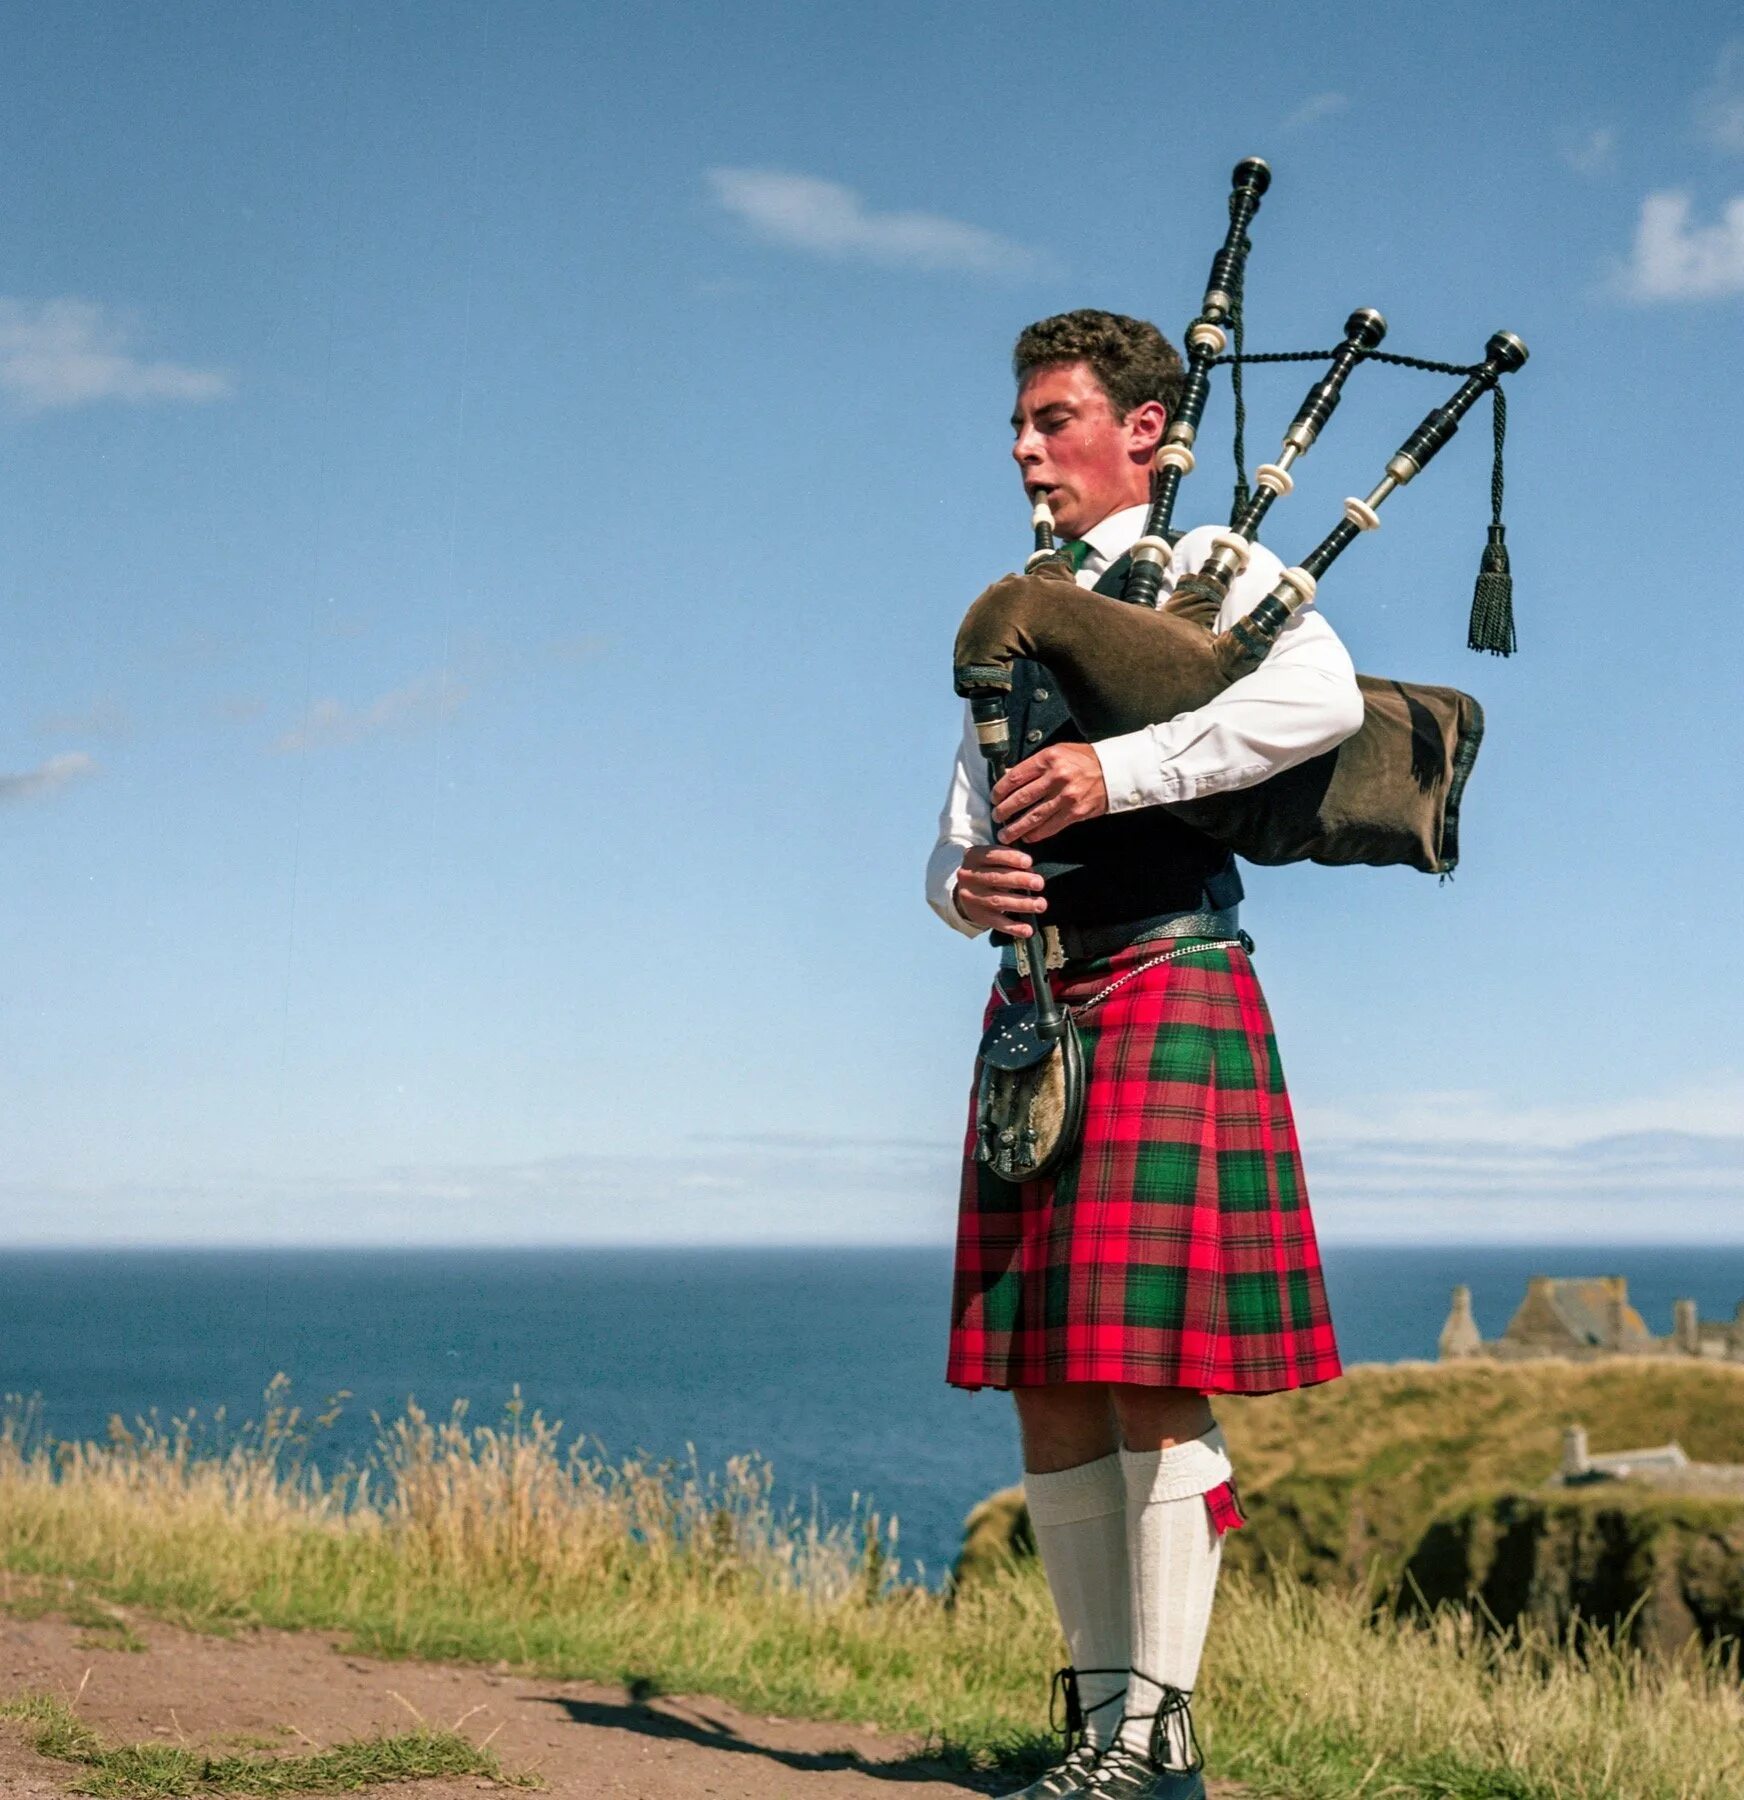 Волынка в Шотландии. Волынщики Шотландии. Шотландия музыкальный инструмент национальный волынка. Волынка национальный инструмент Шотландии.